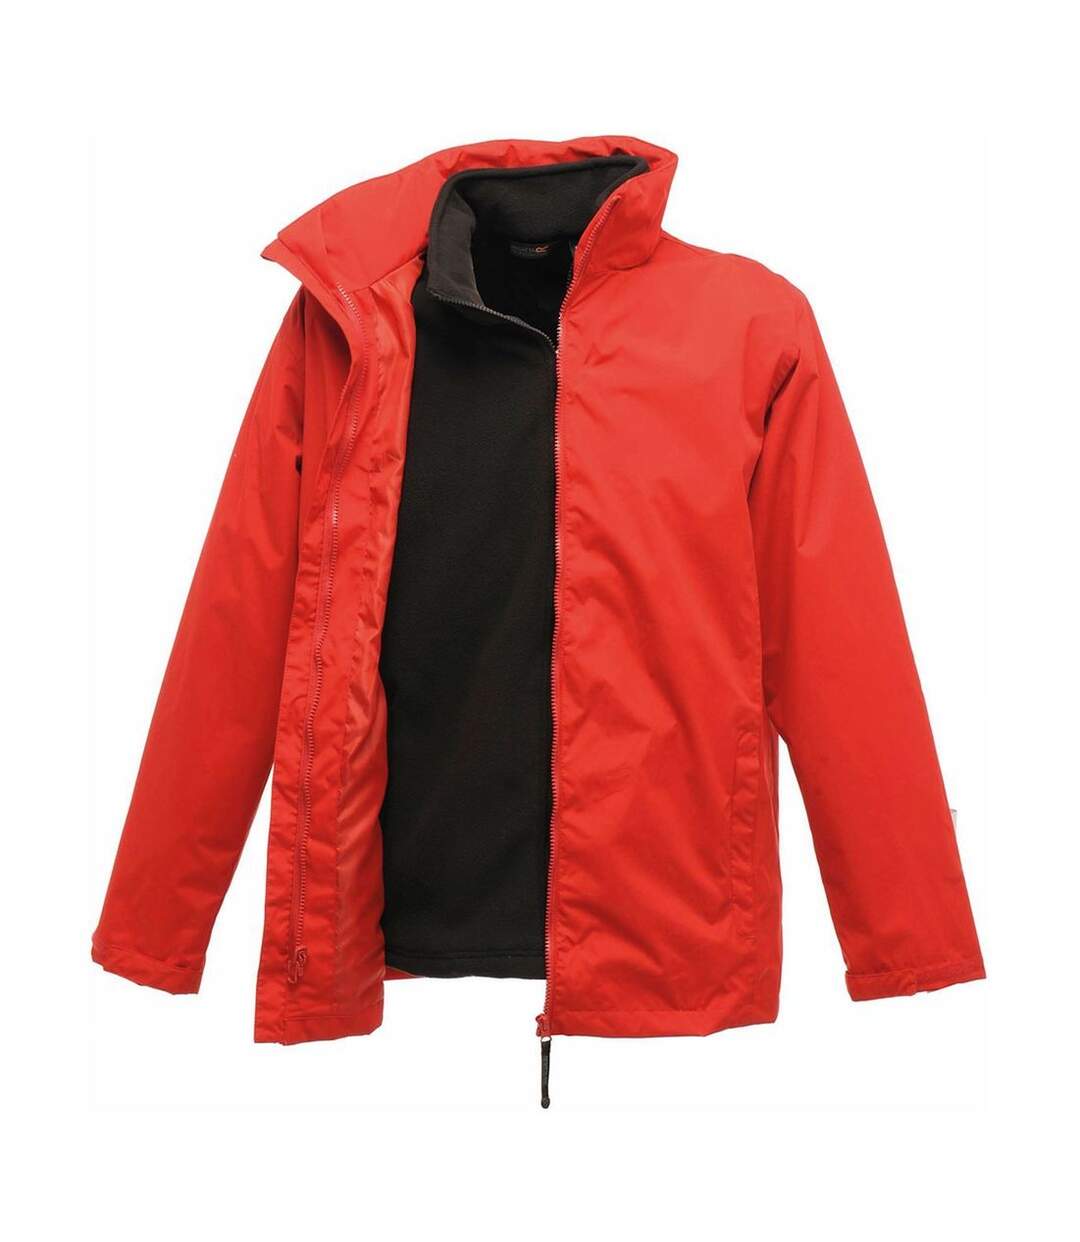 Parka veste imperméable 3 en 1 homme TRA150 - rouge